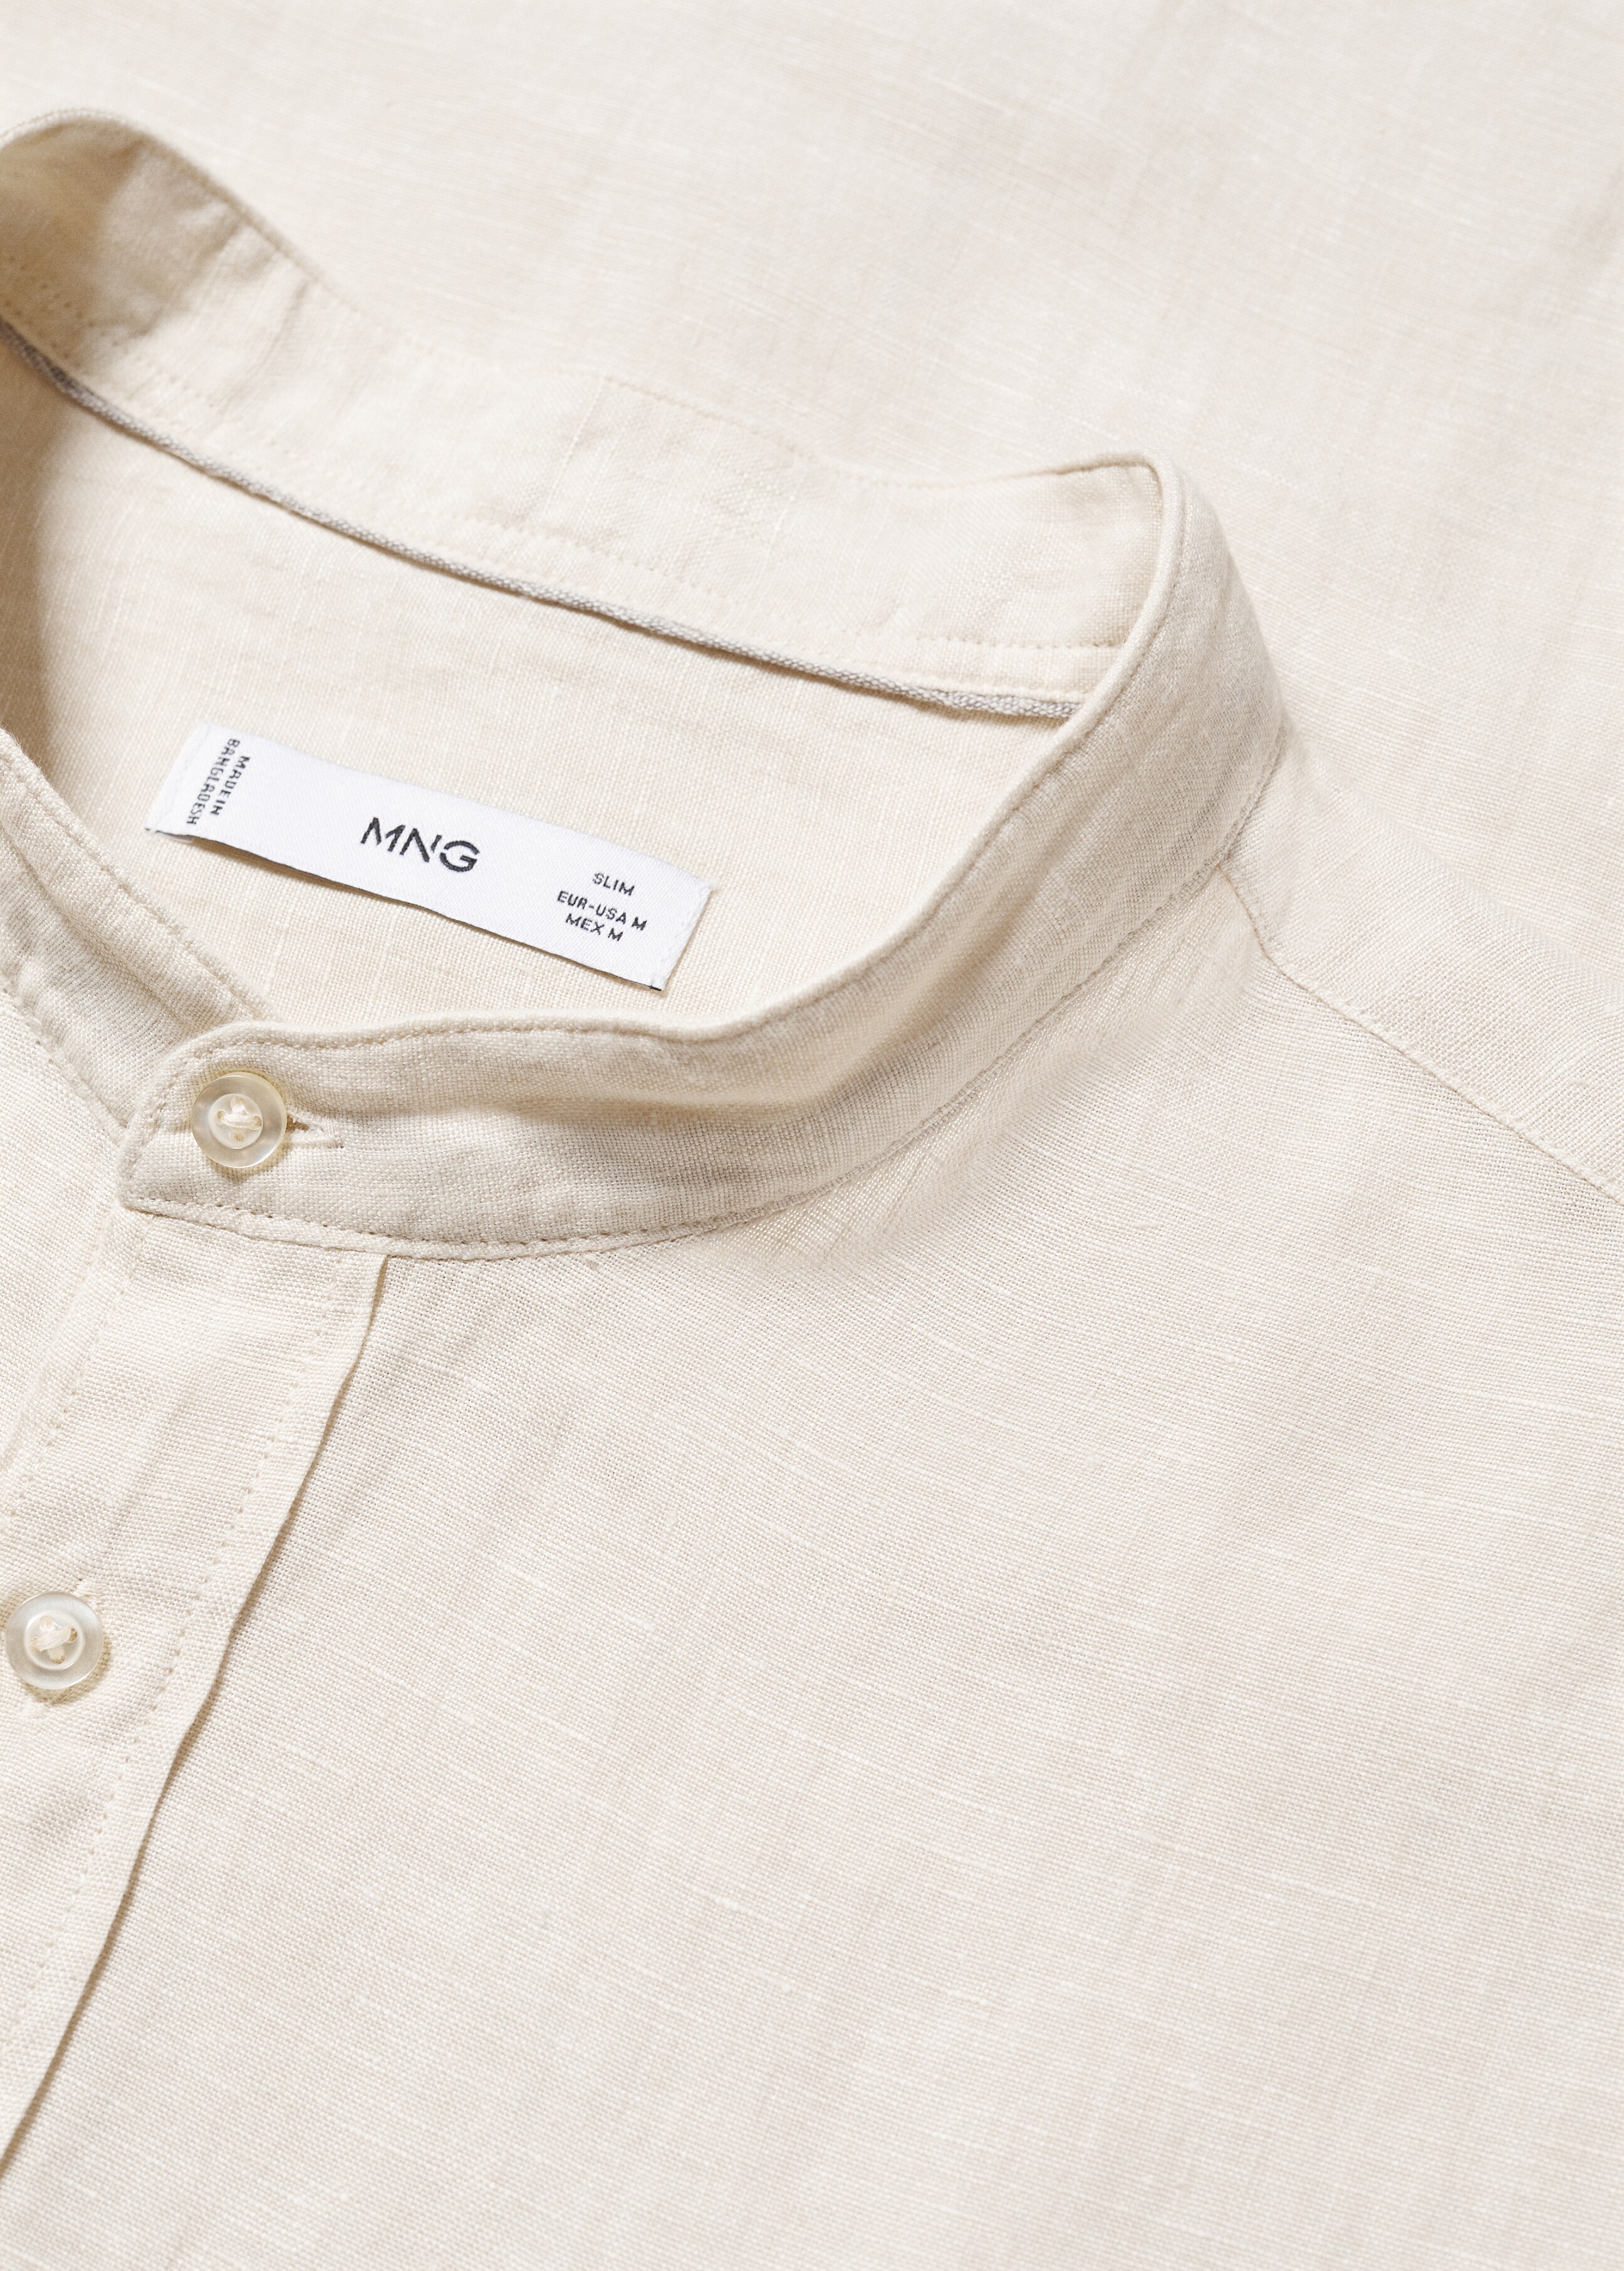 100% linen Mao collar shirt - Details of the article 8